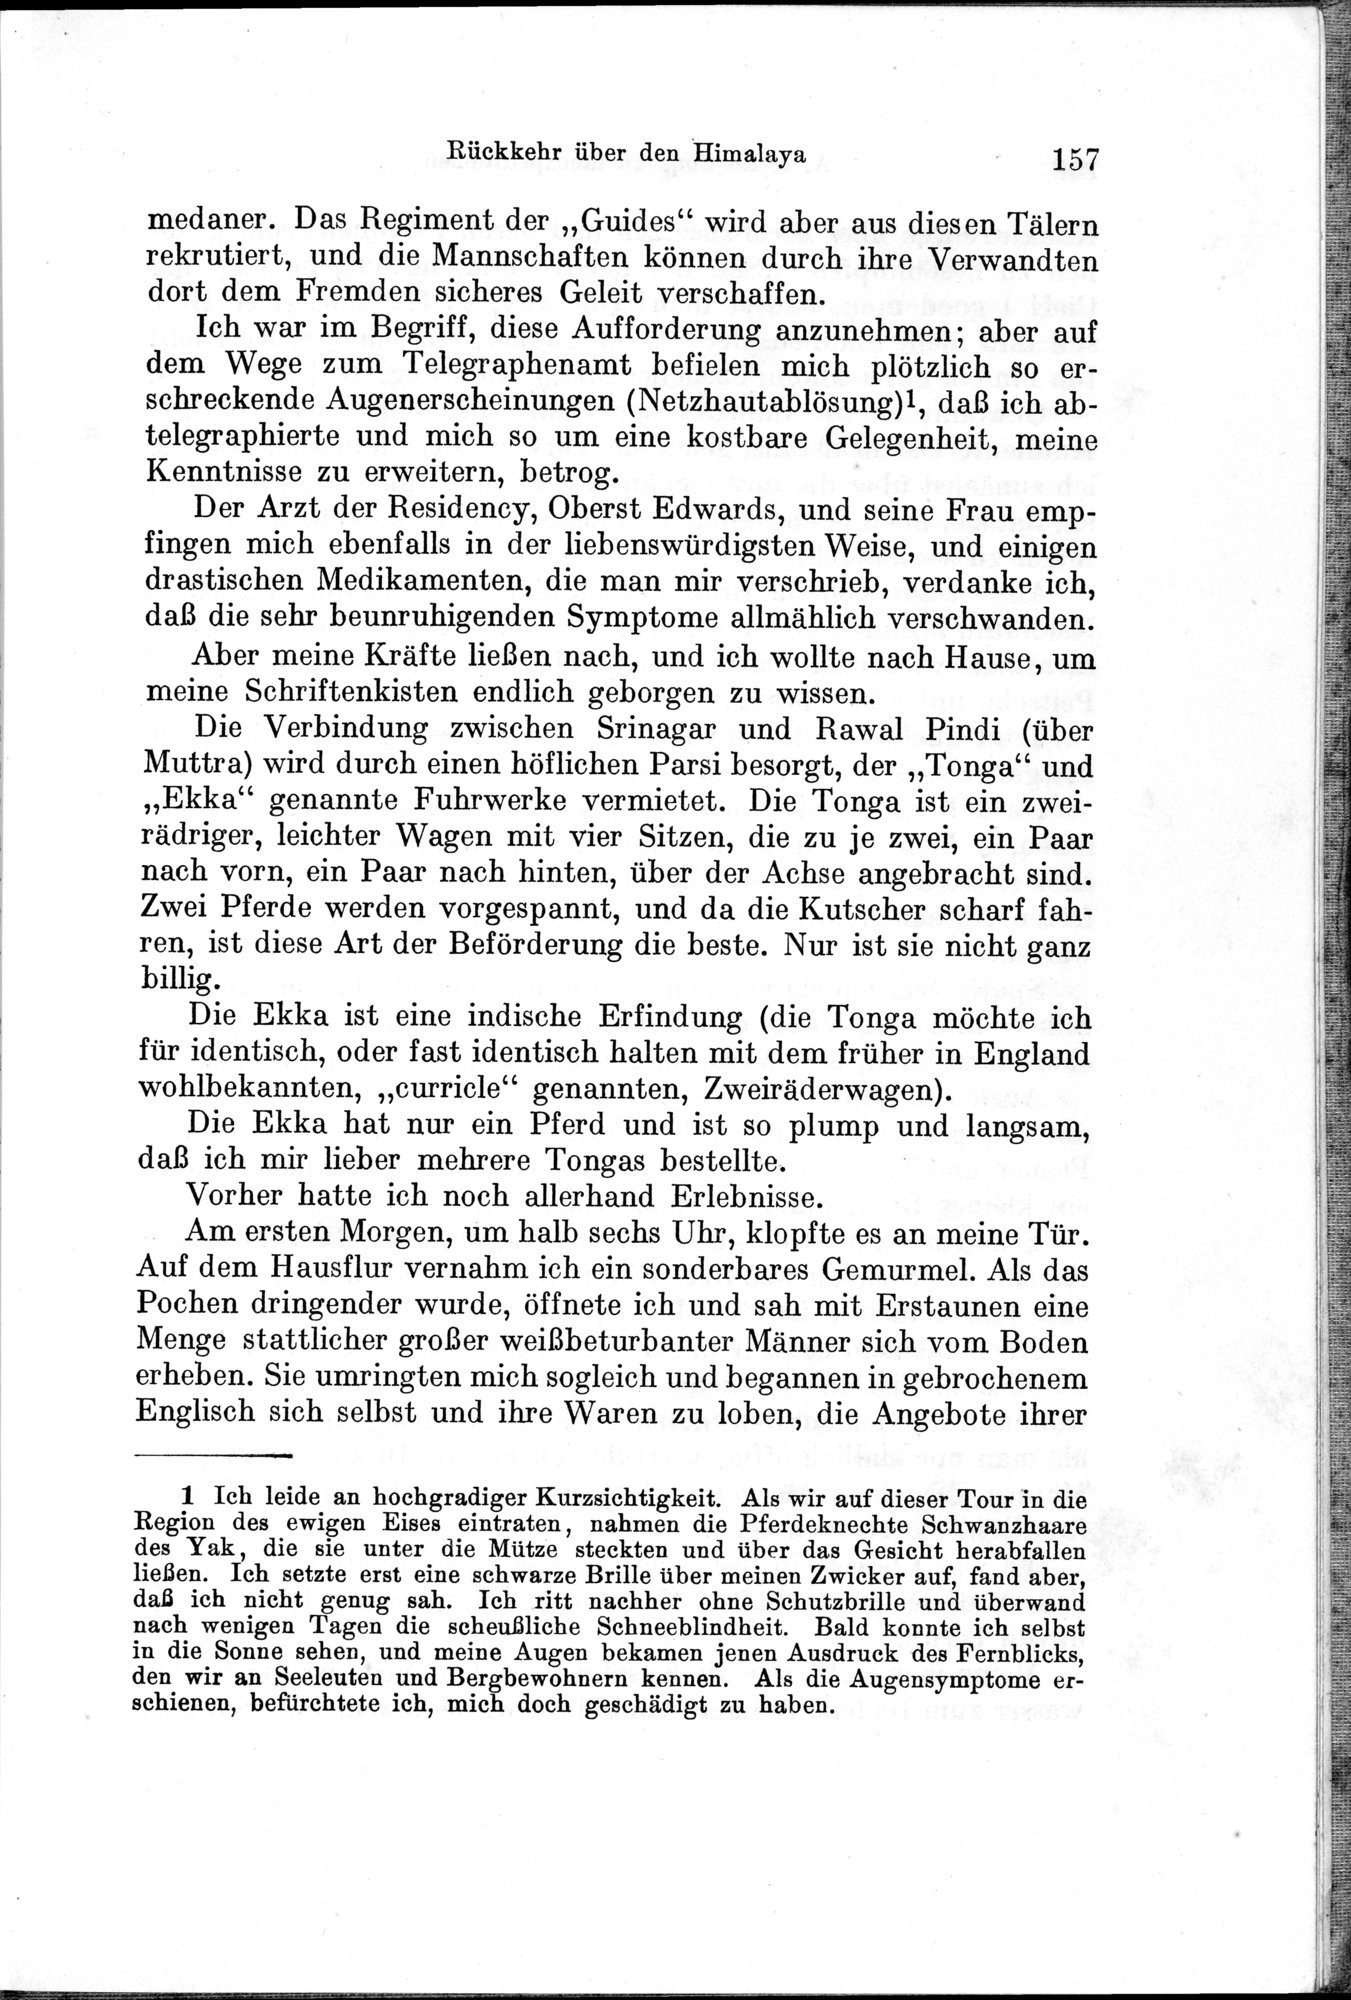 Auf Hellas Spuren in Ostturkistan : vol.1 / Page 225 (Grayscale High Resolution Image)